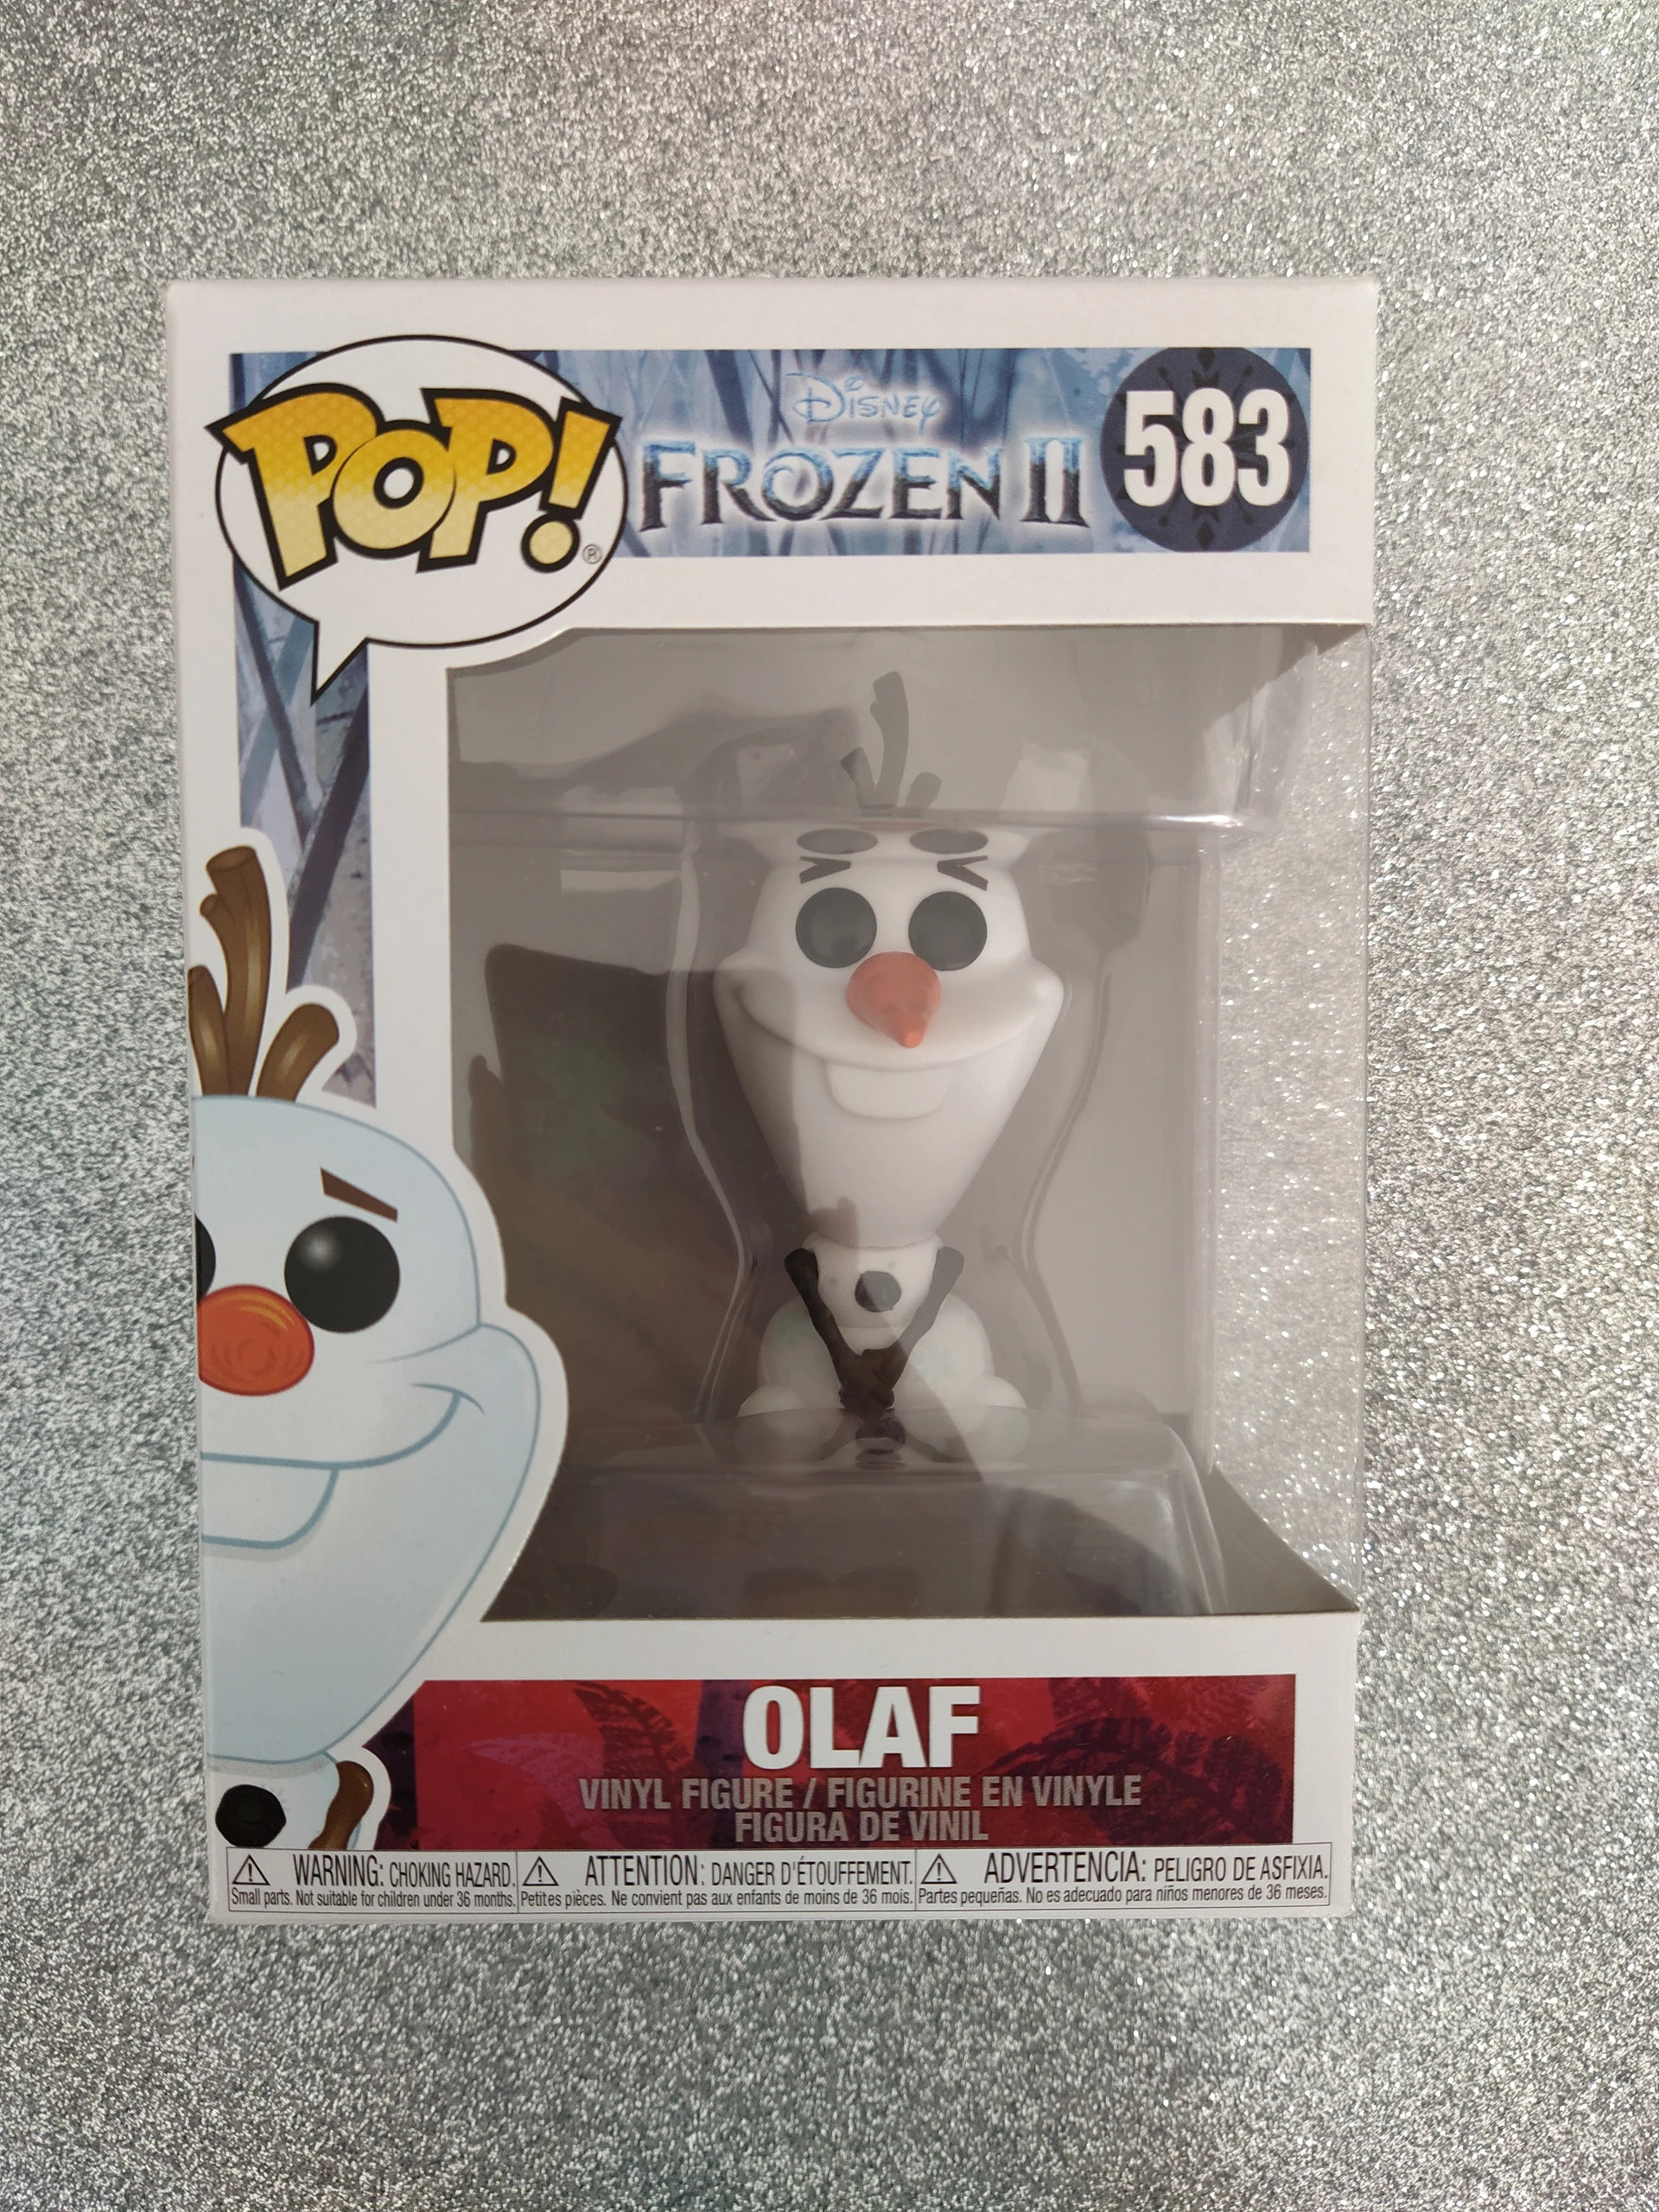 Funko Pop Olaf #583 Disney Frozen 2 - Box Wear – Simply Pop